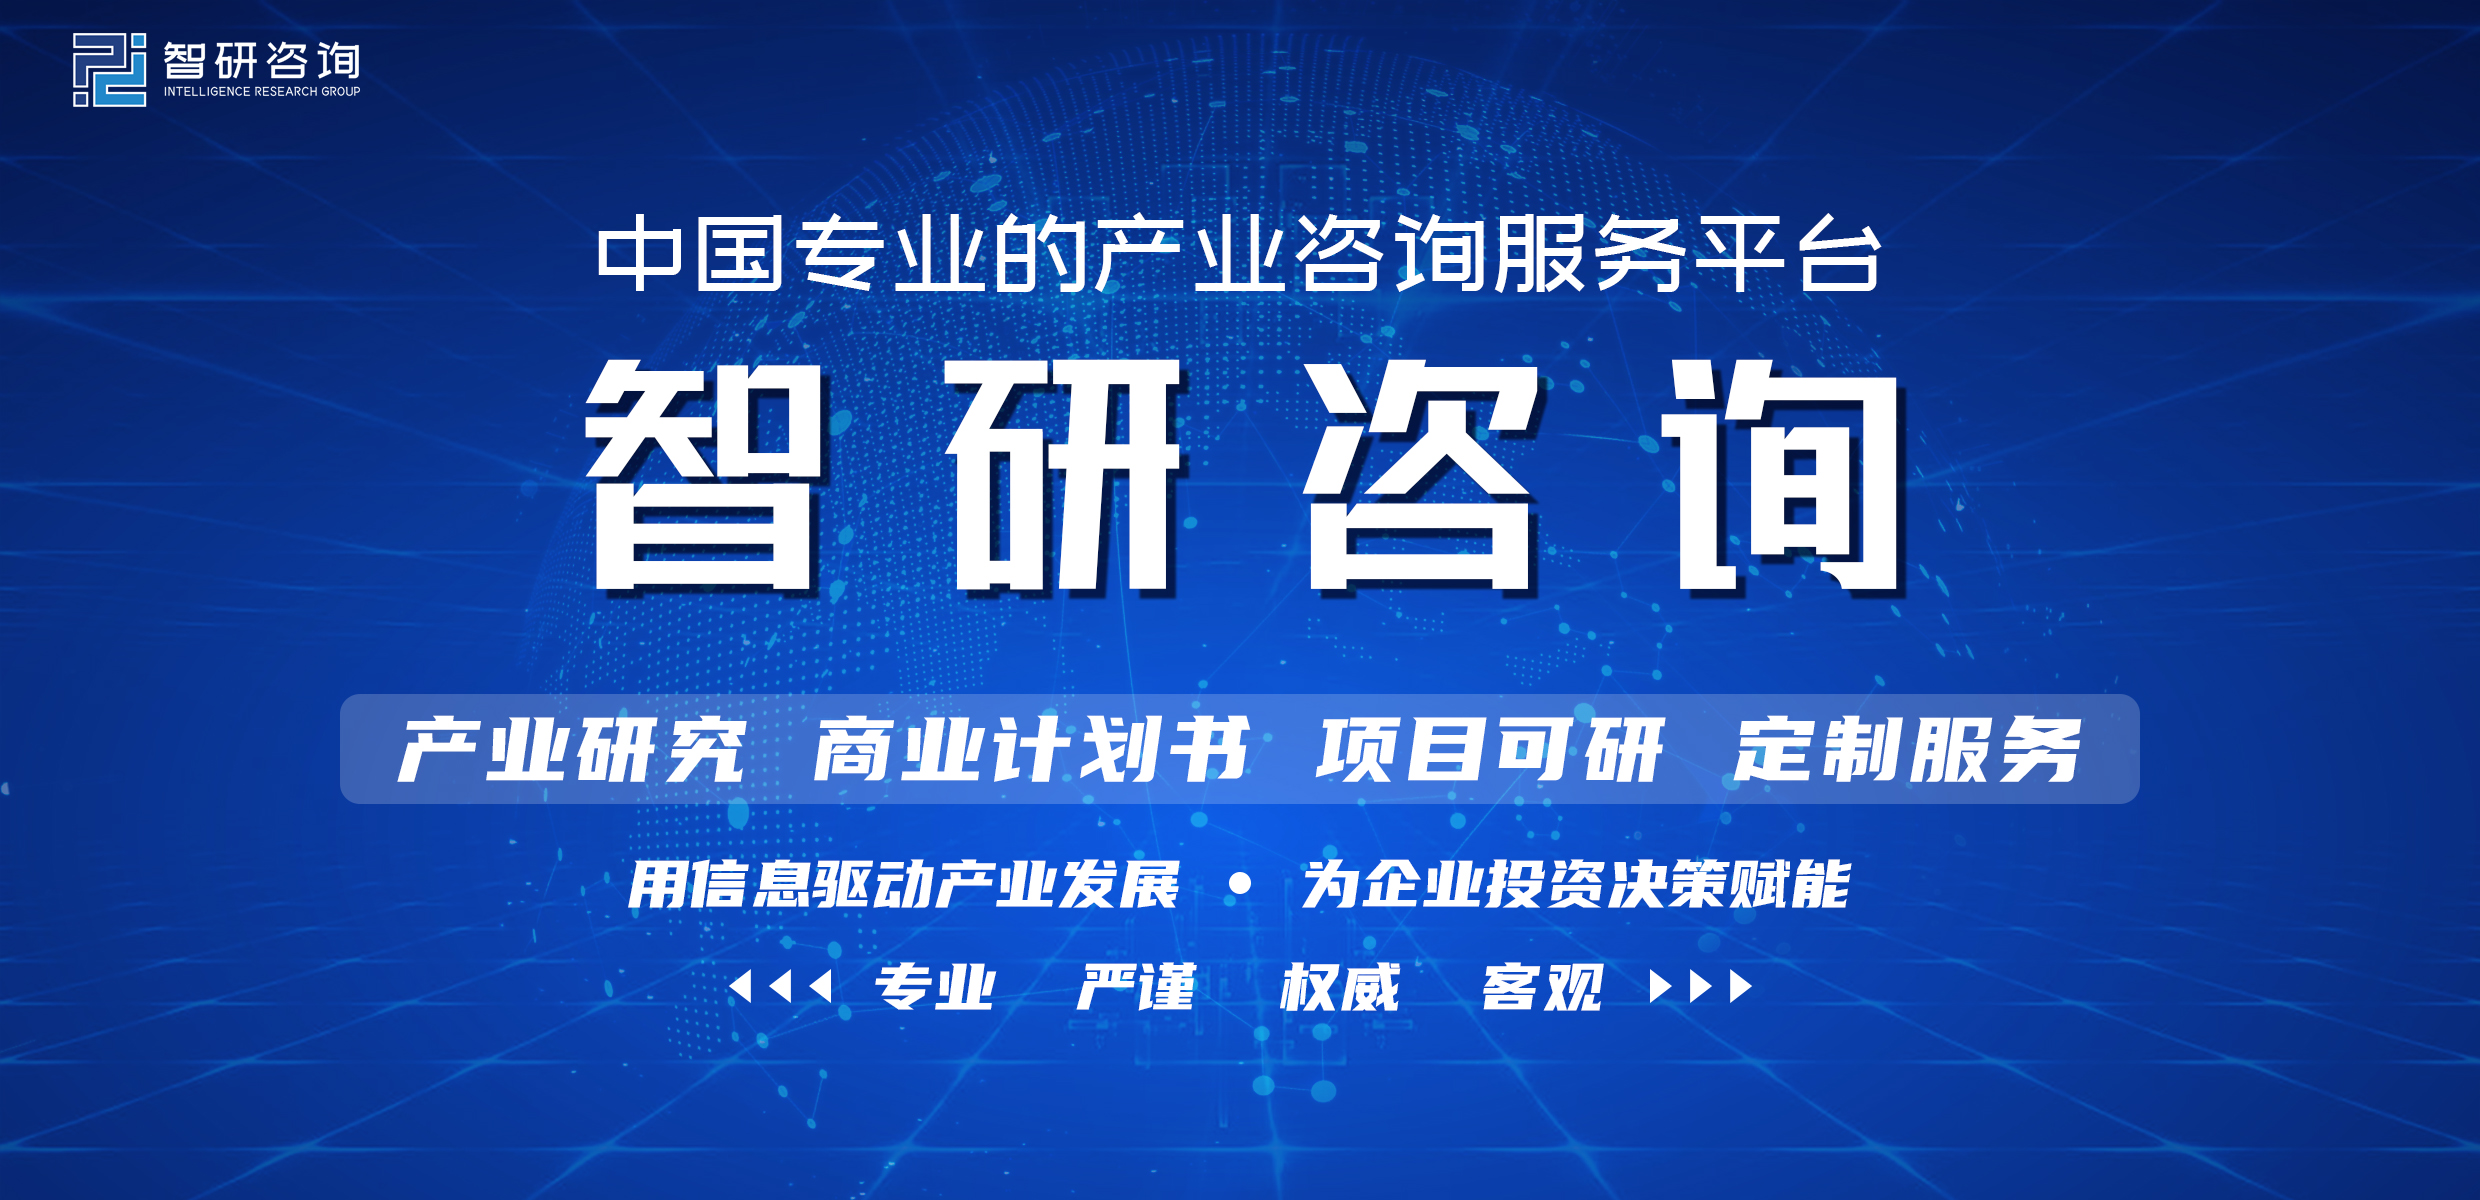 2021年中国激光器行业发展现状：我国激光器市场规模达129亿美元